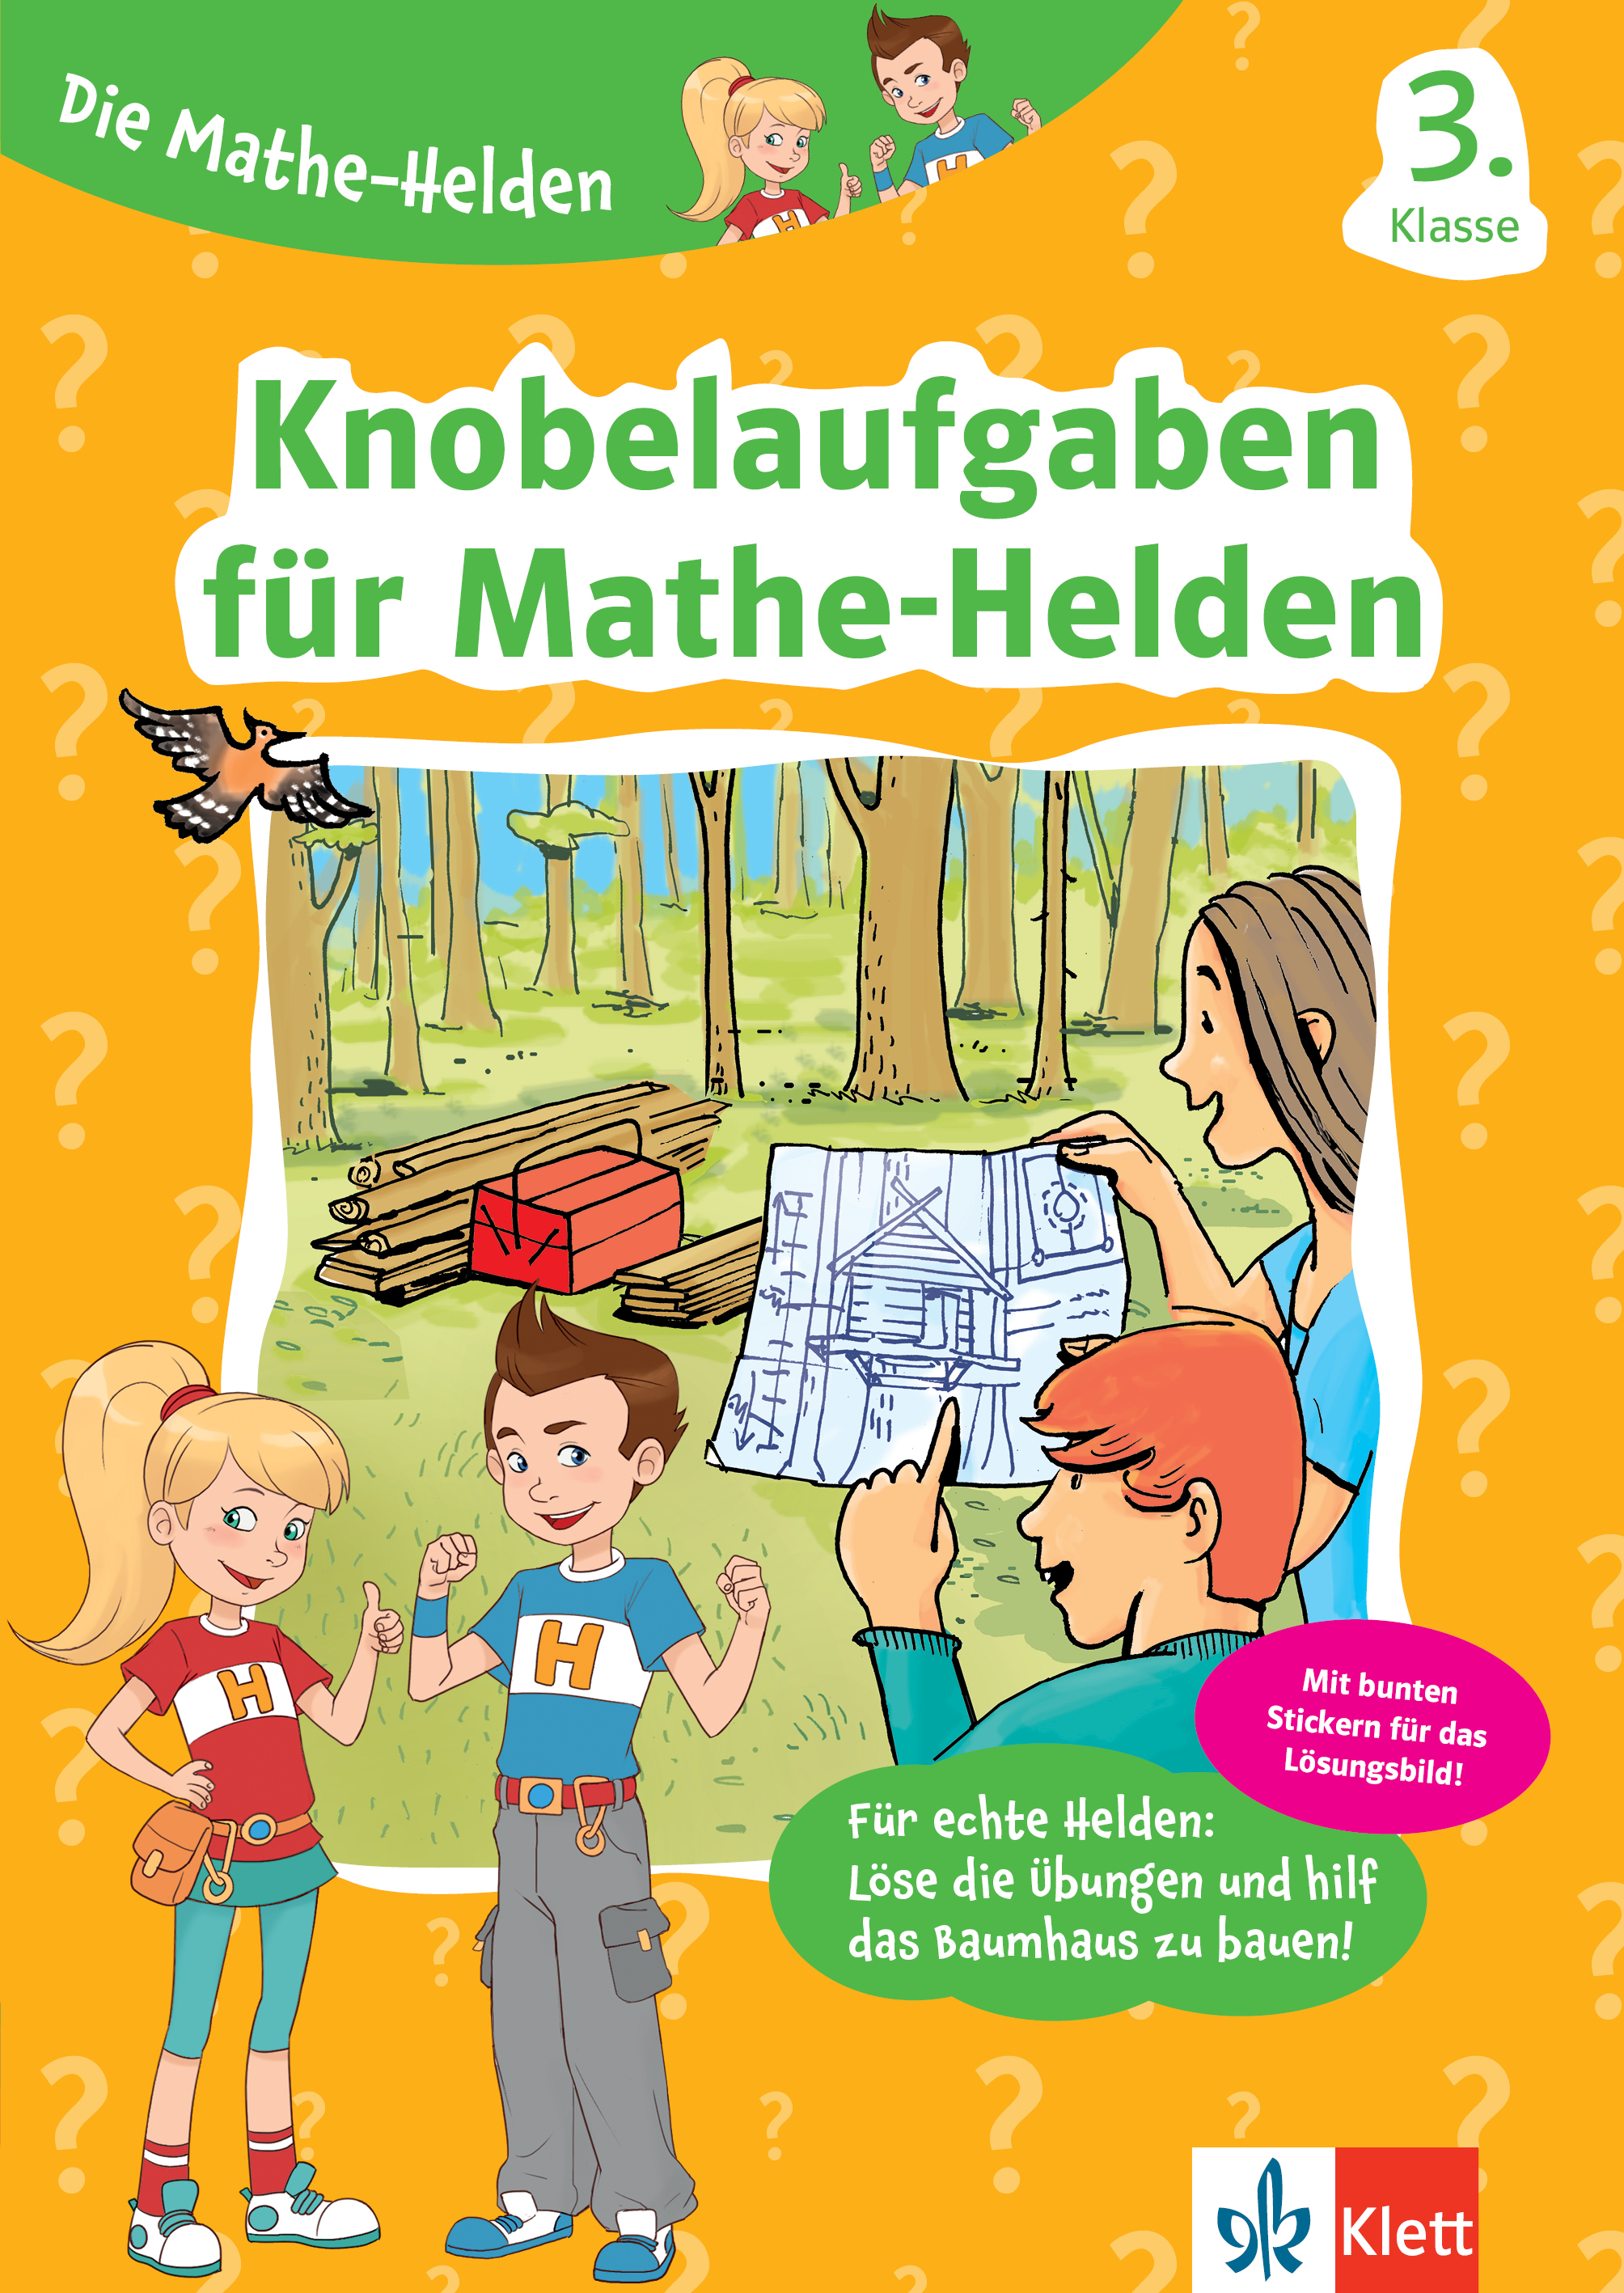 Klett Knobelaufgaben für Mathe-Helden 3. Klasse